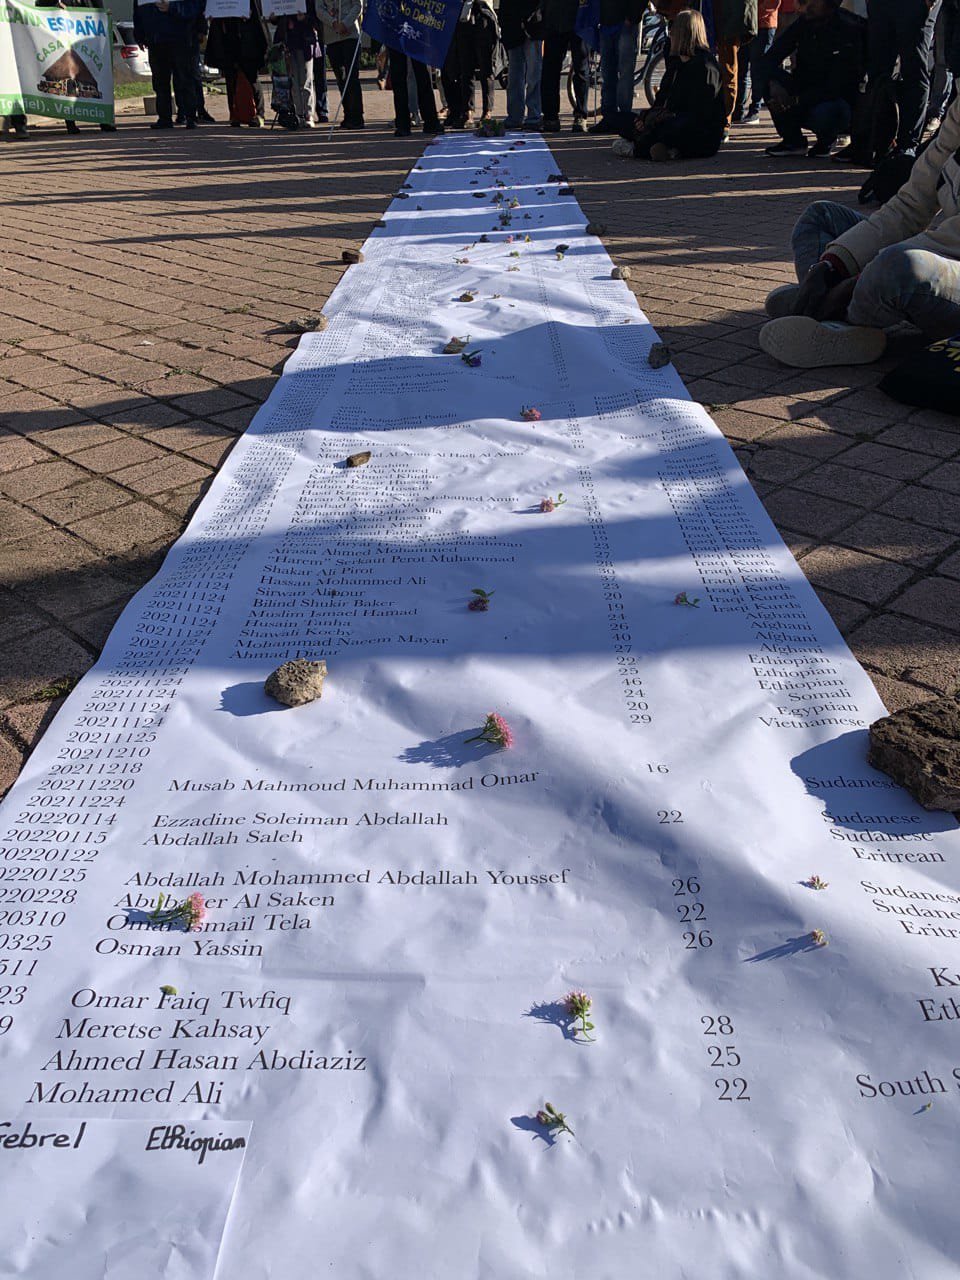 Les manifestants se recueillent autour d'une banderole avec des noms de migrants décédés lors de leur trajet vers l'Europe. Crédit : Caravana Abriendo Fronteras